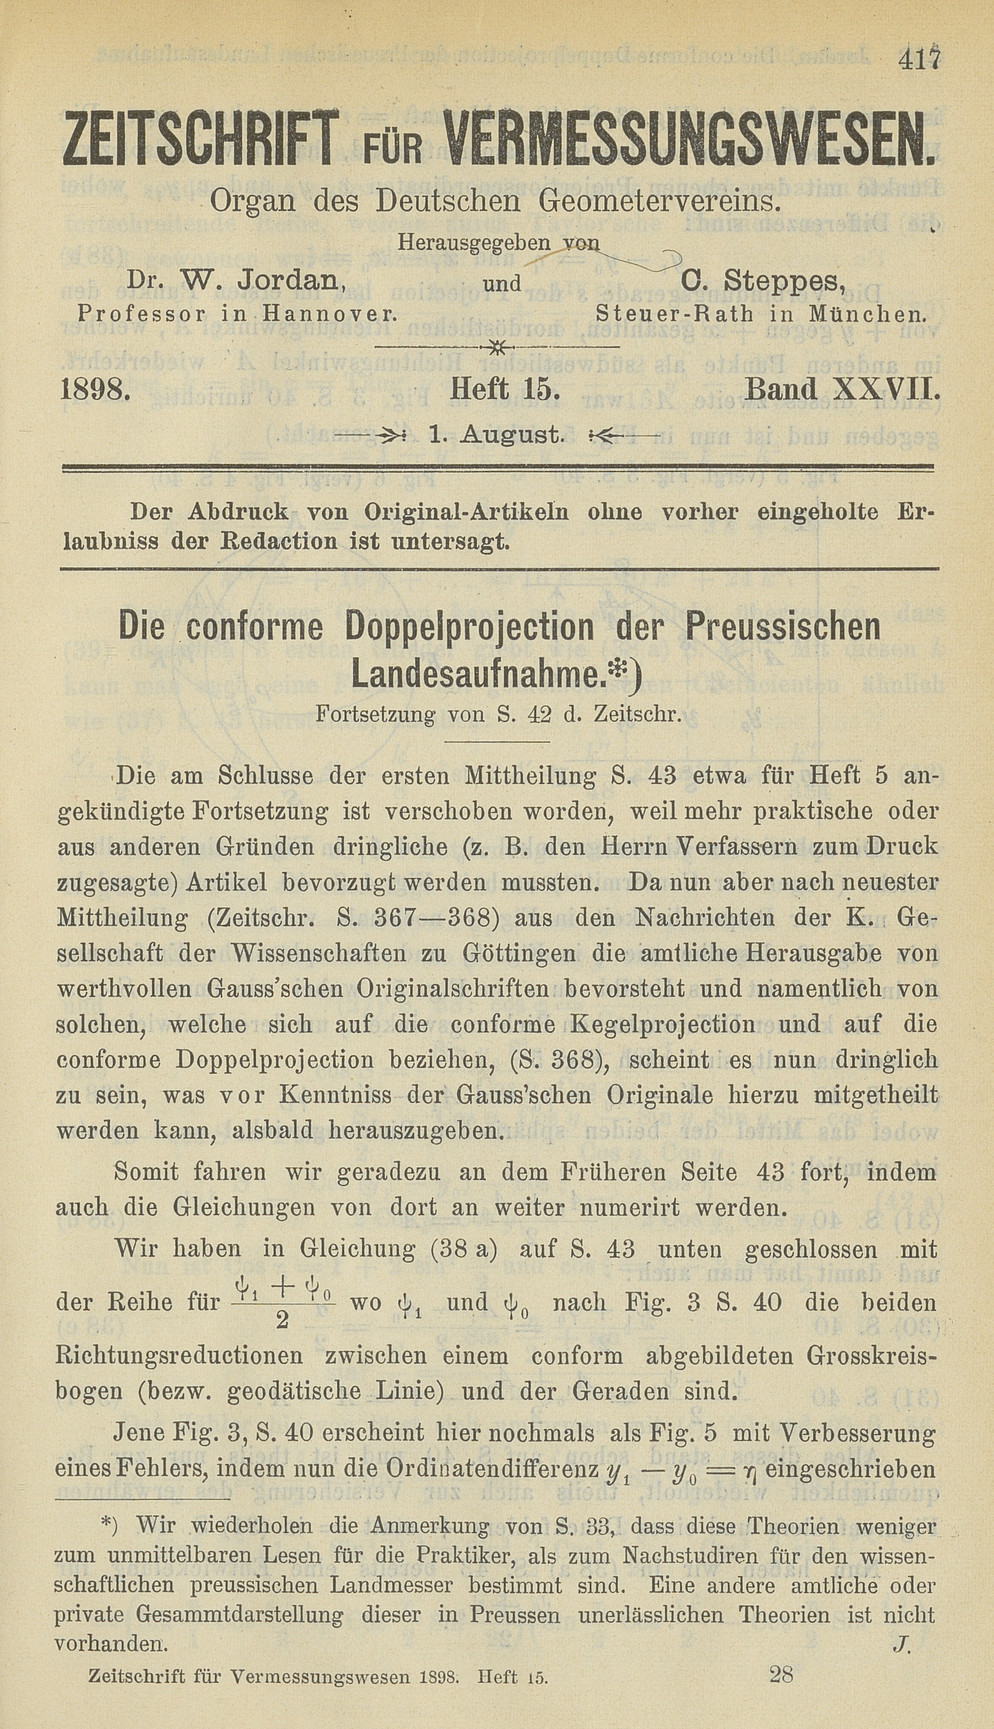 Zeitschrift für Vermessungswesen, Heft 15, Band XXVII